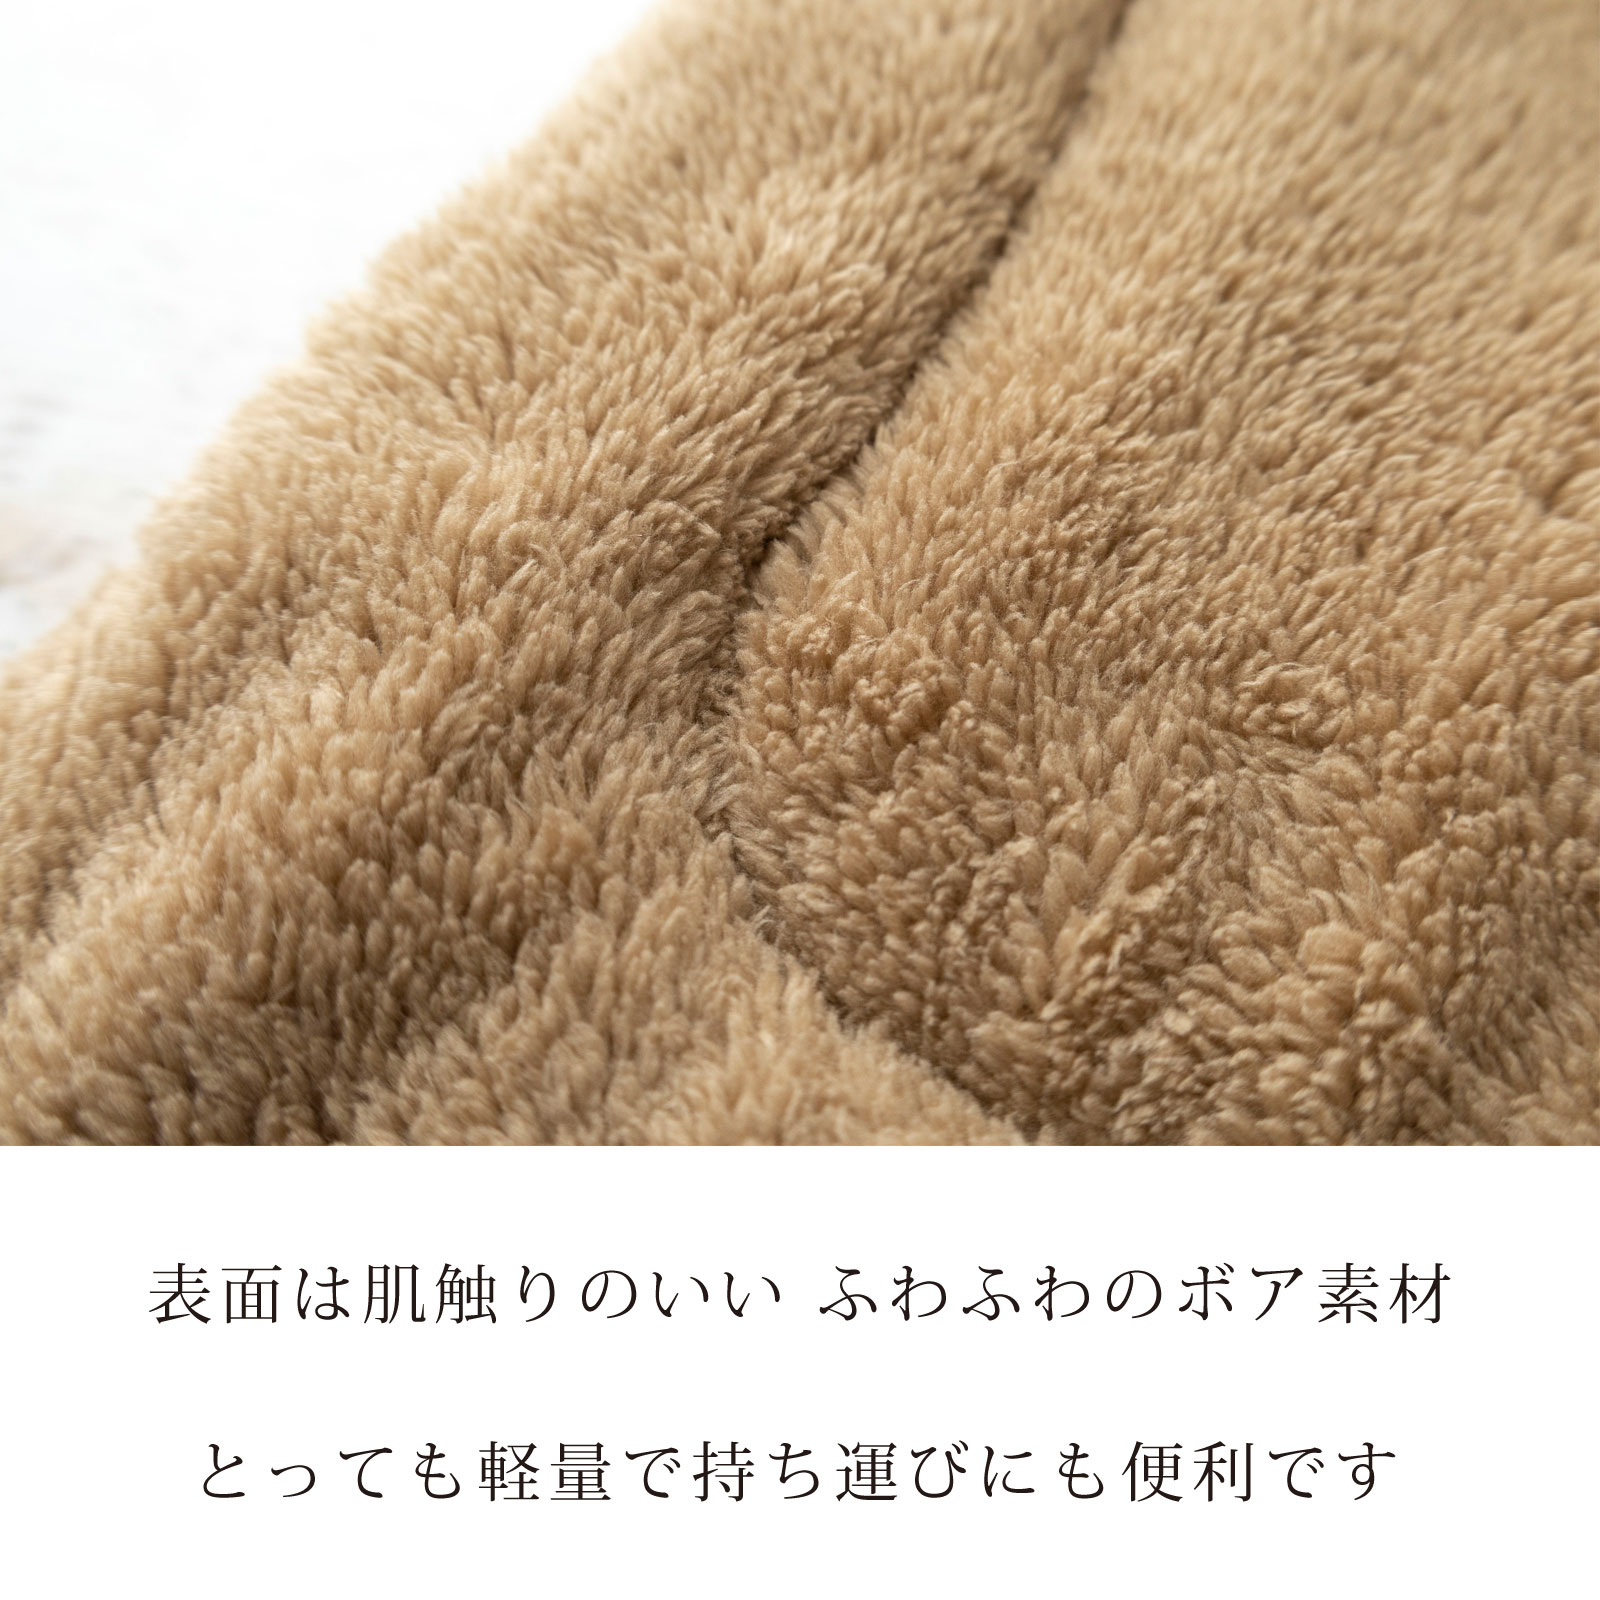 日本製 キャリー用マット クレート用マット 犬 猫 防寒 冬 ふわふわのボア素材